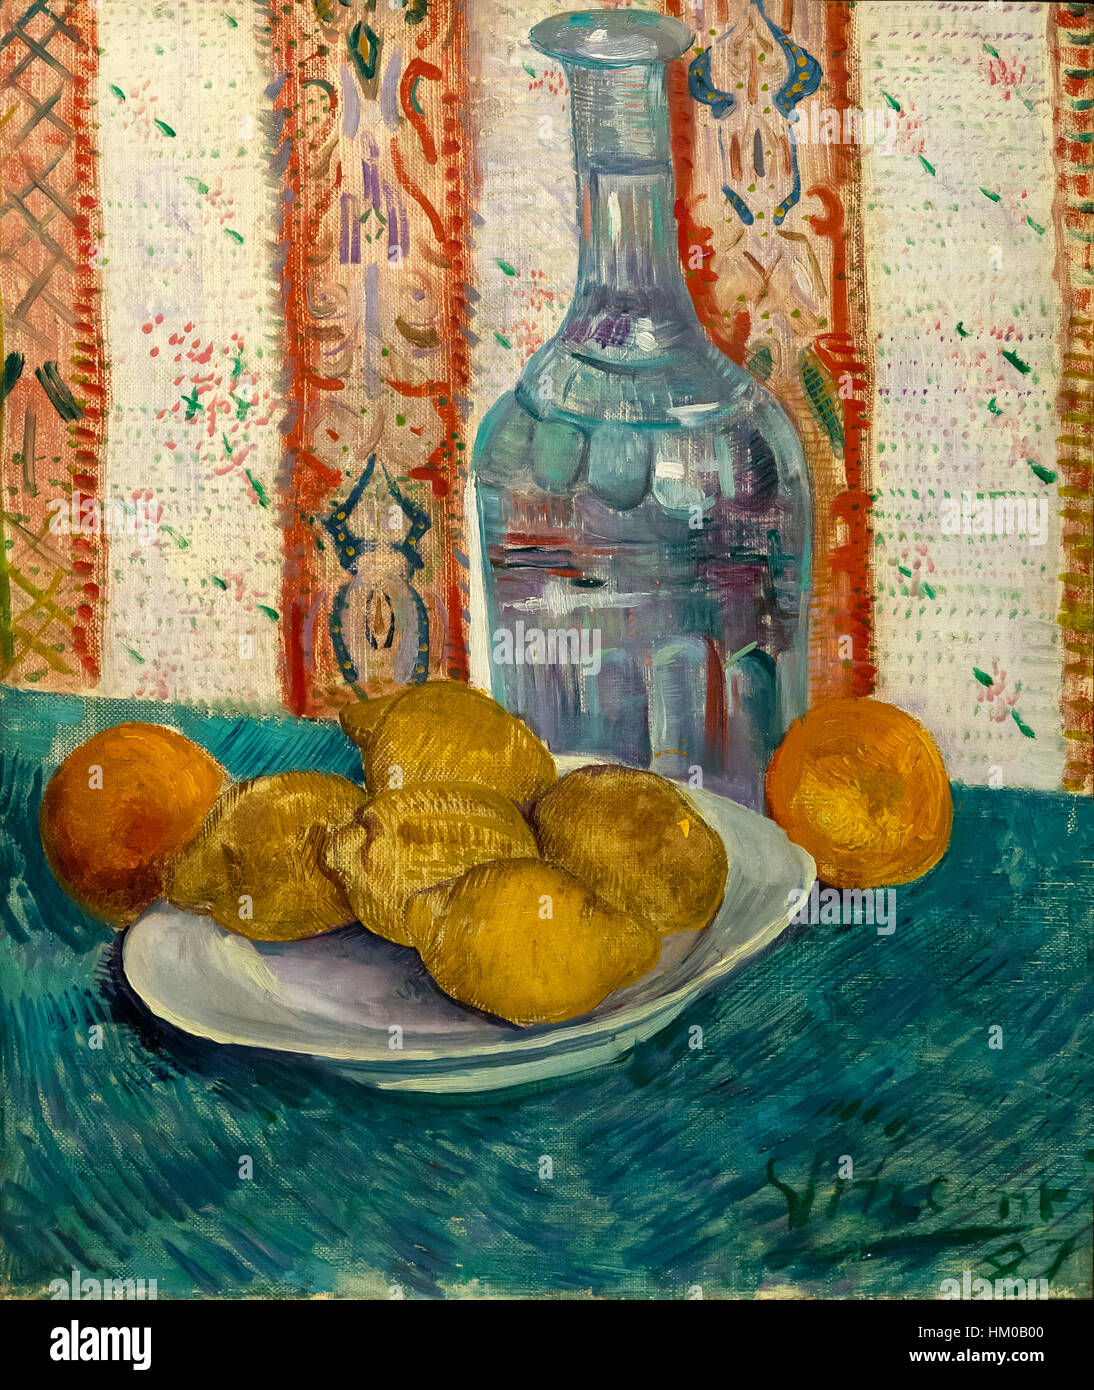 Karaffe und Teller mit Zitrusfrüchten, von Vincent Van Gogh, 1887, Öl auf Leinwand, Rijksmuseum, Amsterdam, Niederlande, Europa Stockfoto